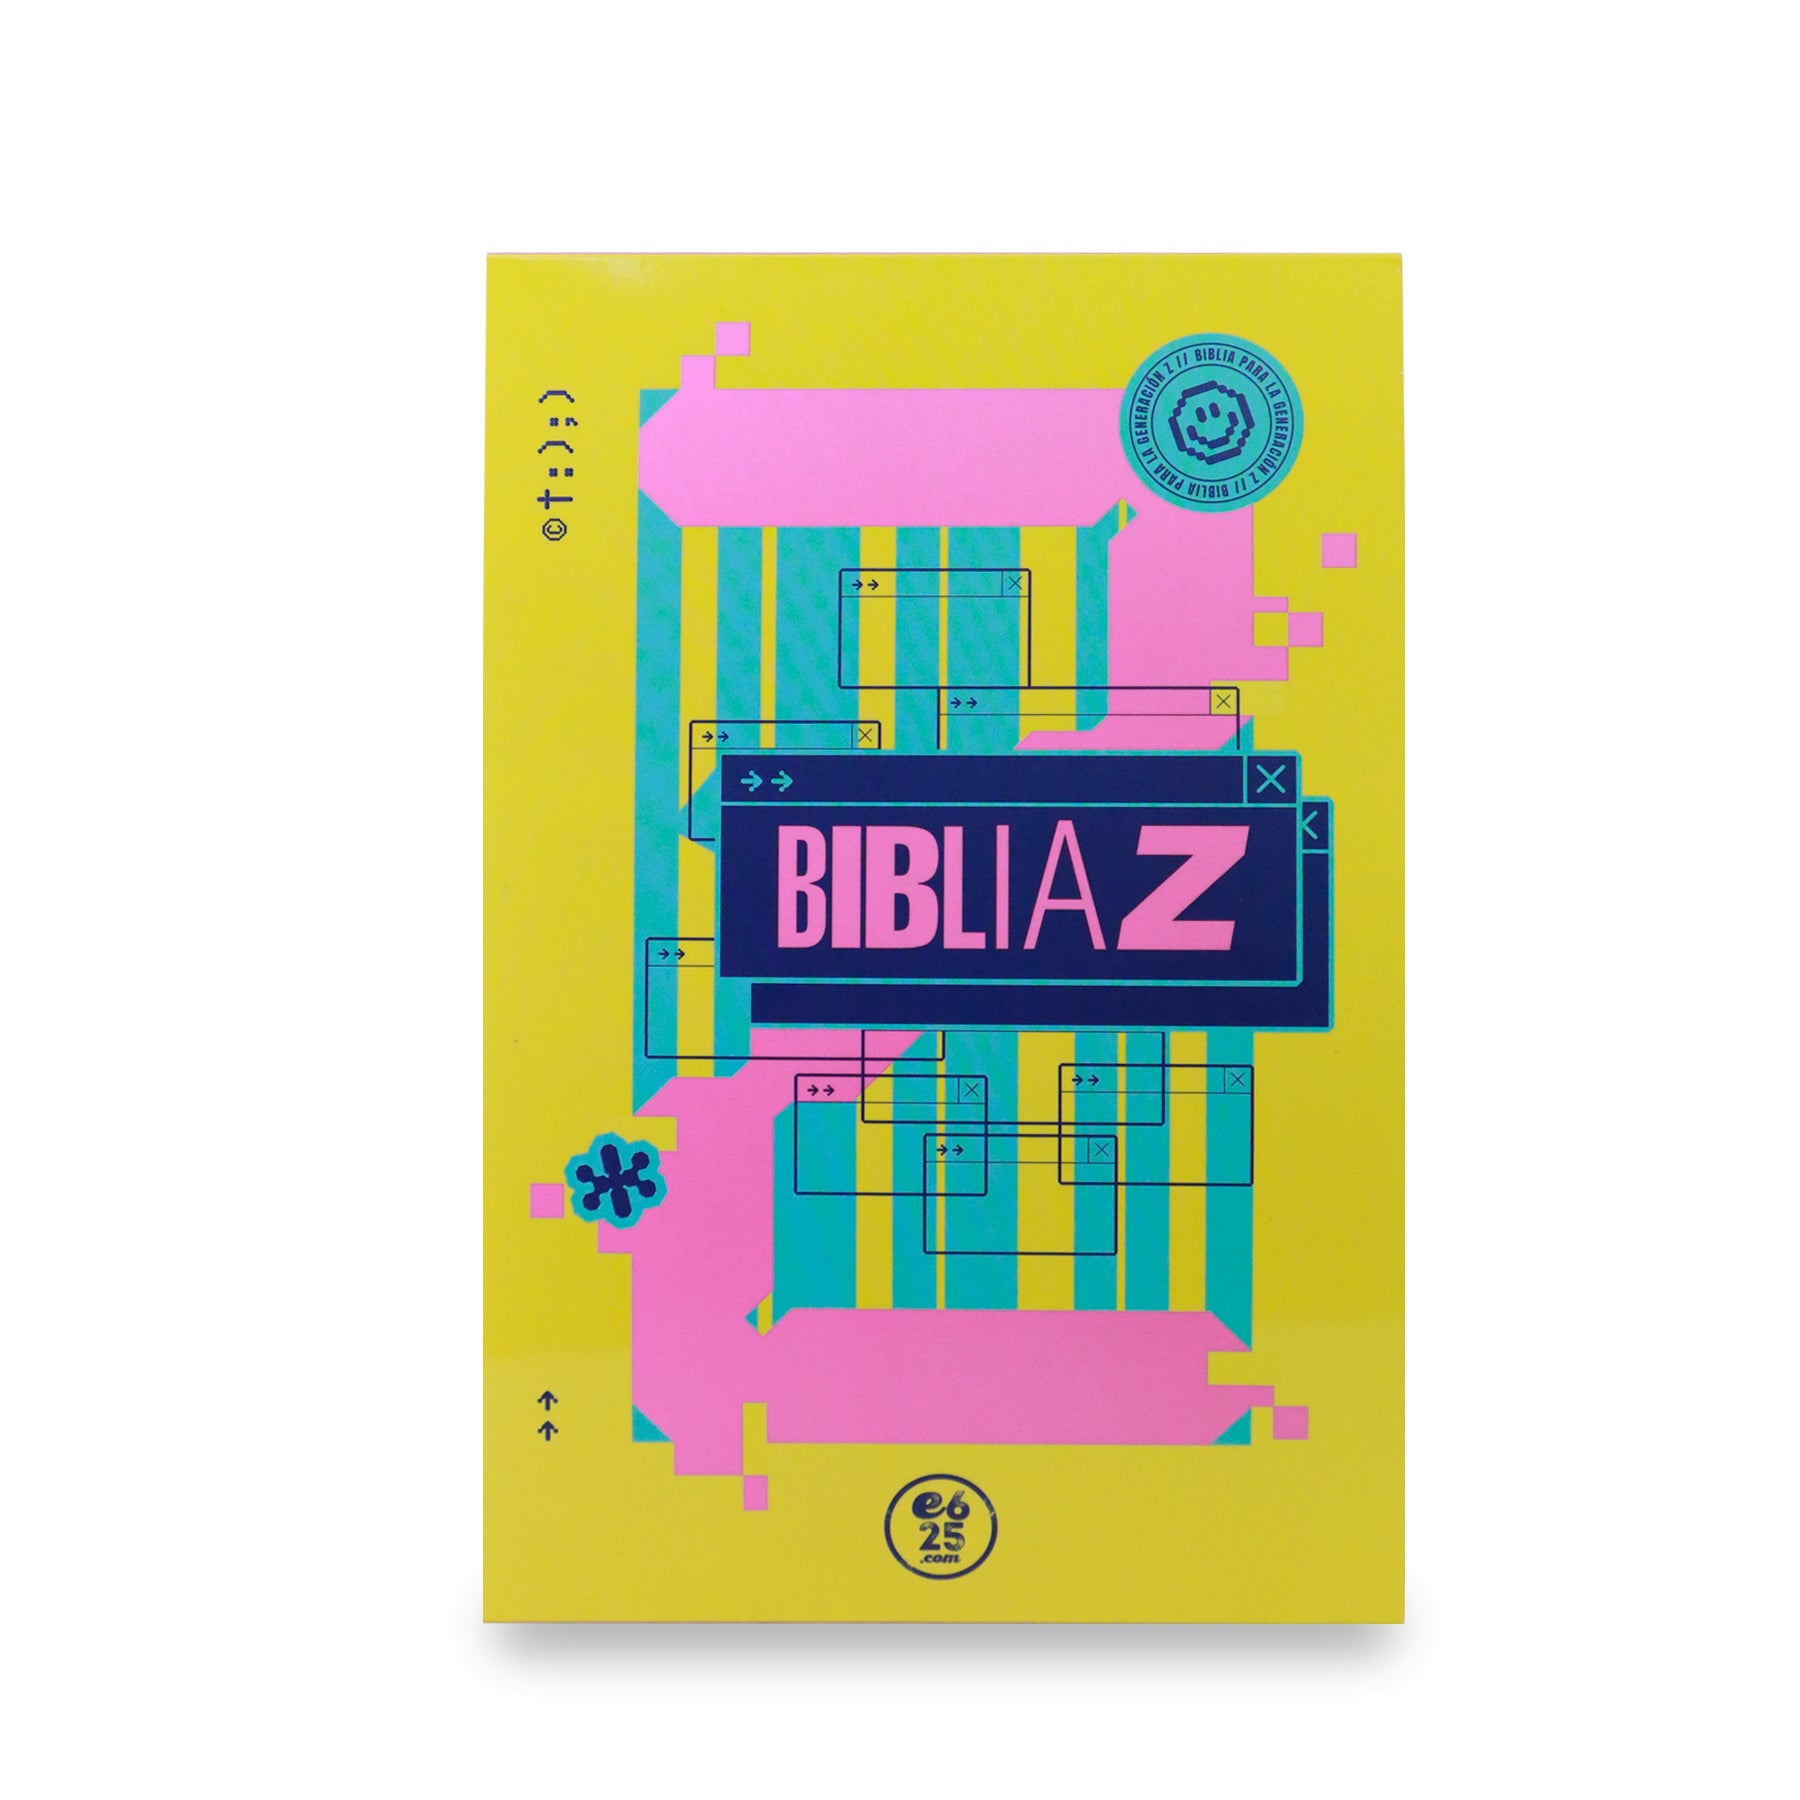 Biblia Z NBV de Itiel Arroyo y Lucas Leys – Levítico